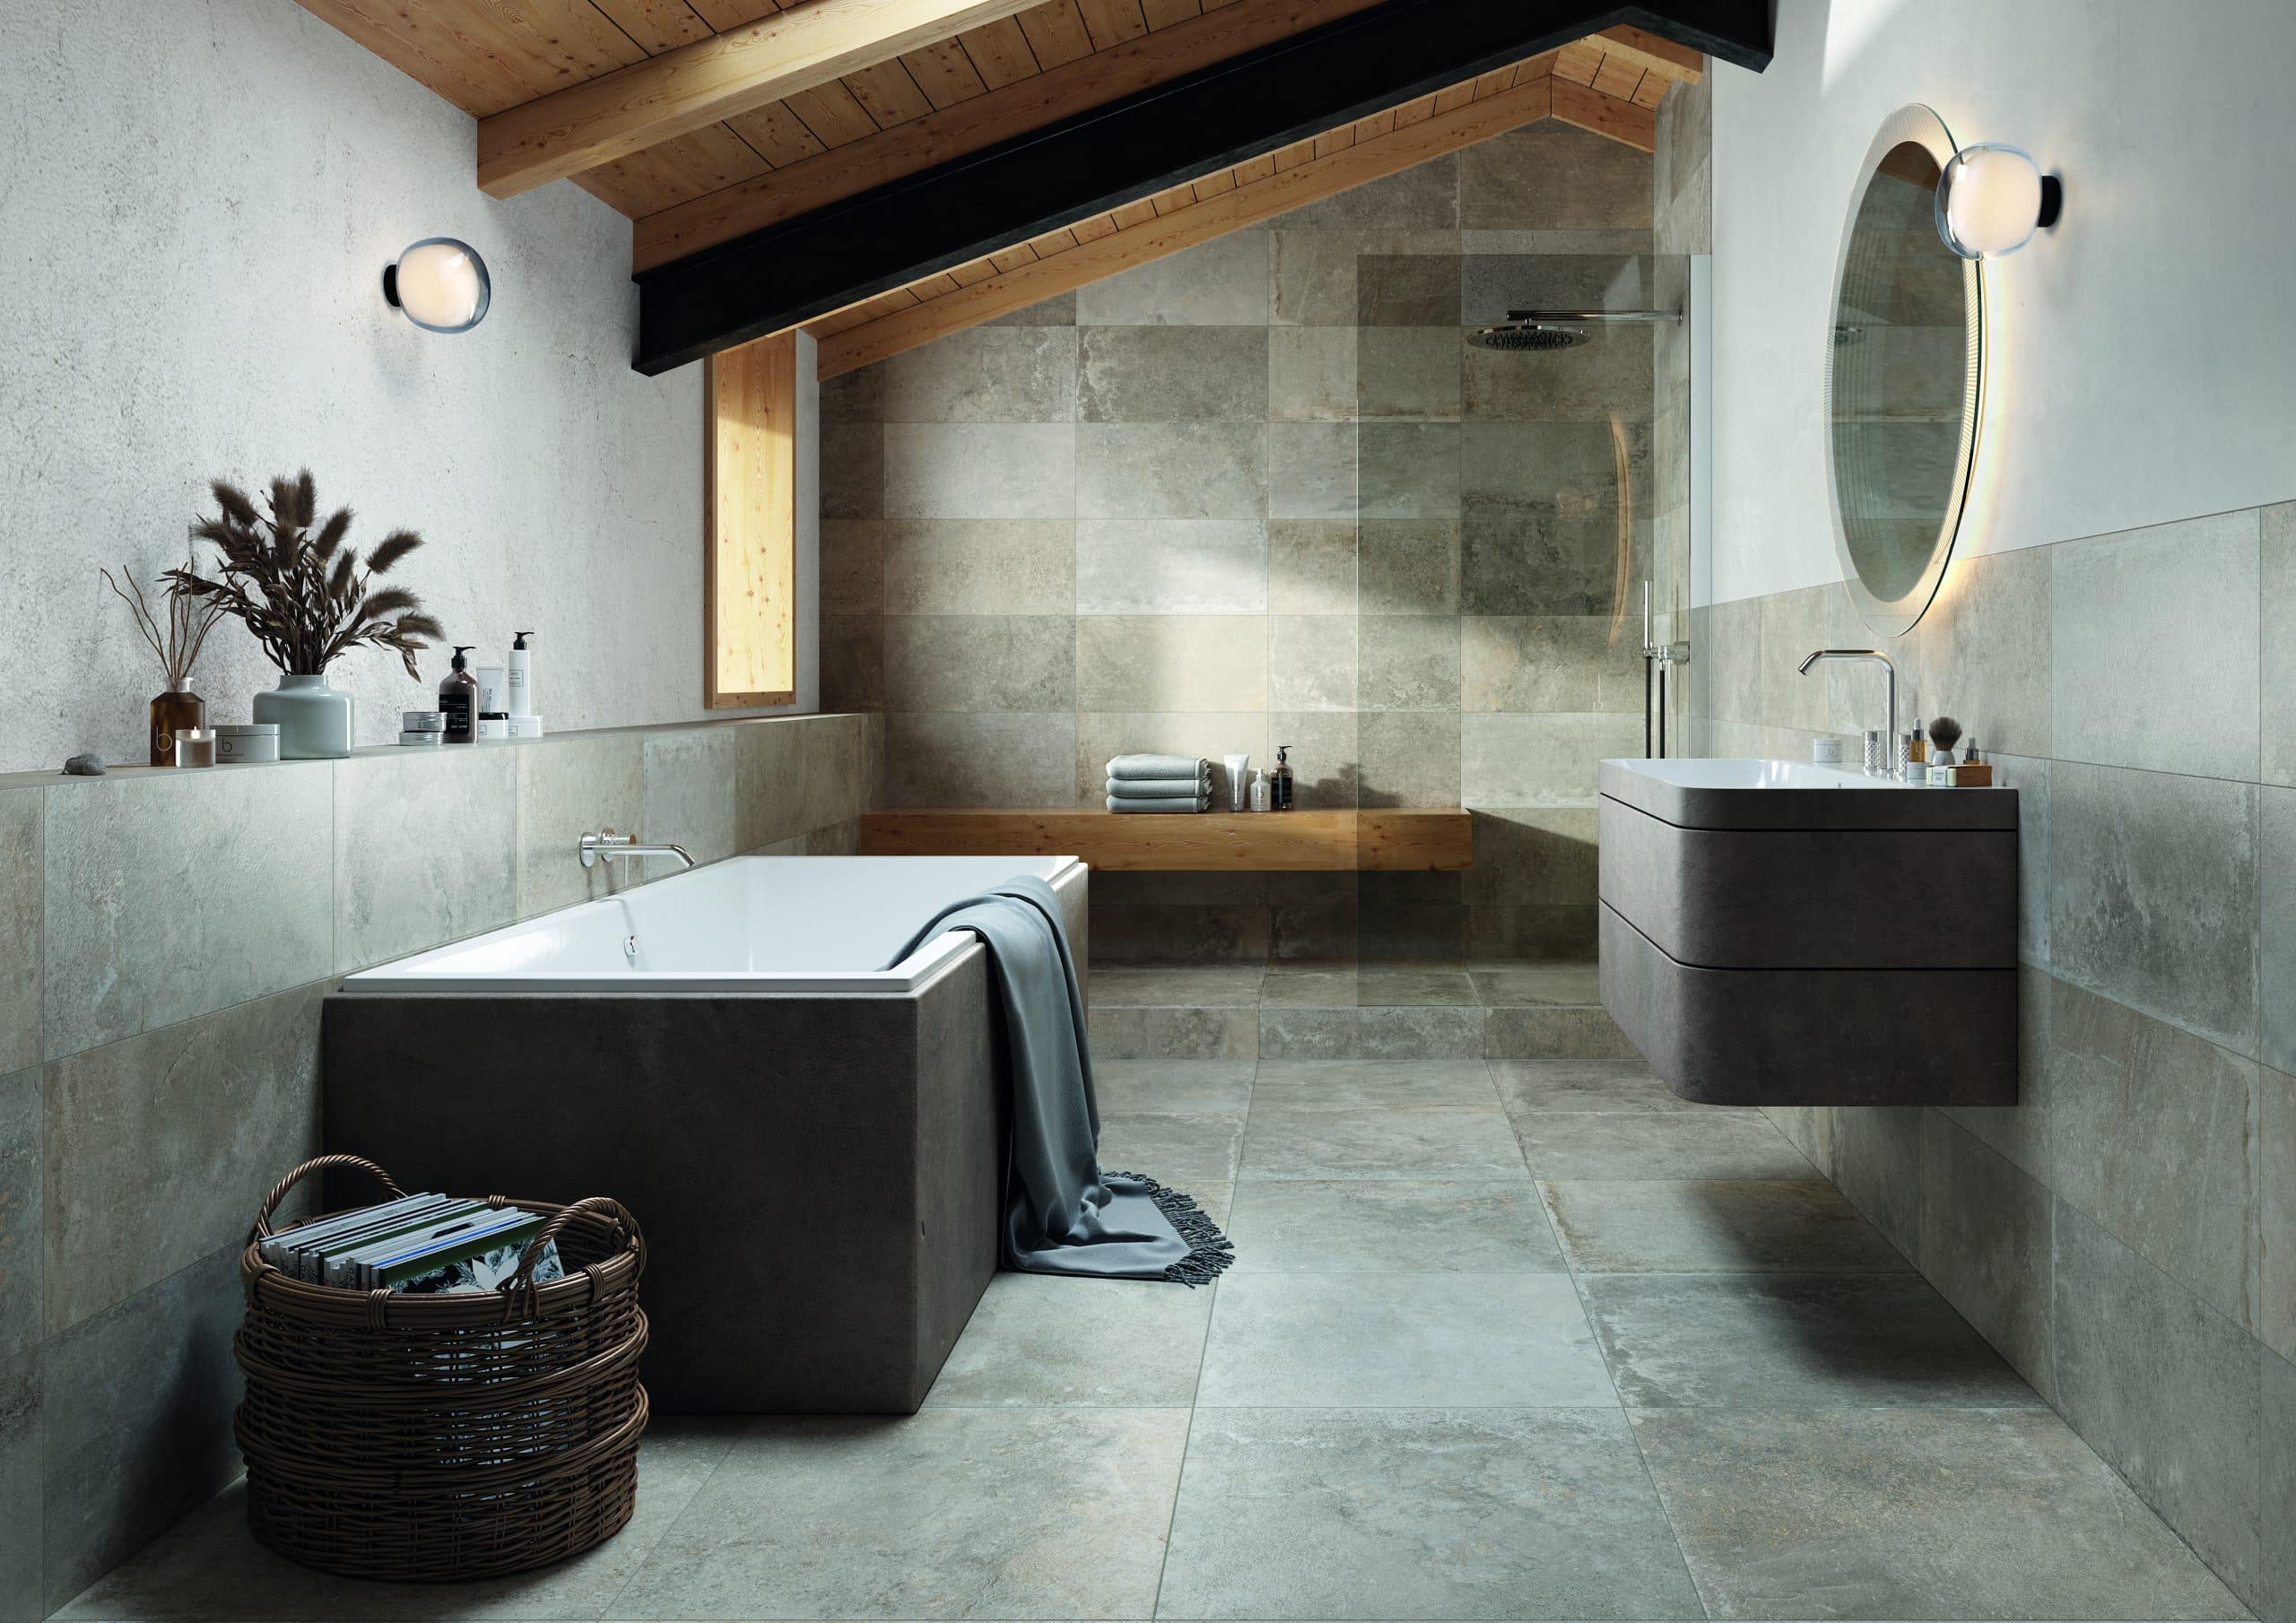 Fliesendorf zeigt ein Badezimmer mit Deckenholzverkleidung, Dachschrägen, einer braunen Badewanne, einem Waschtisch mit Spiegel.